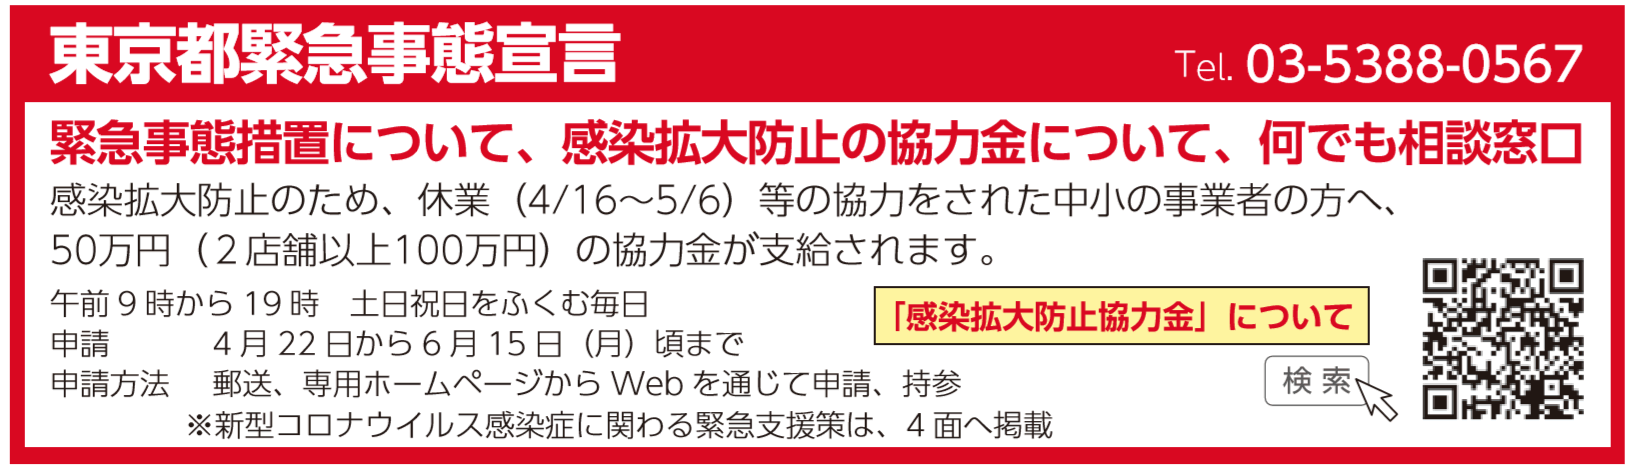 東京都緊急事態宣言 感染拡大防止のため、休業（4/16～5/6）等の協力をされた中小の事業者の方へ50万円（２店舗以上100万円）の協力金が支給されます。午前9時から19時　土日祝日をふくむ毎日 申請 4月22日から6月15日（月）頃まで 申請方法 郵送、専用ホームページからWebを通じて申請、持参